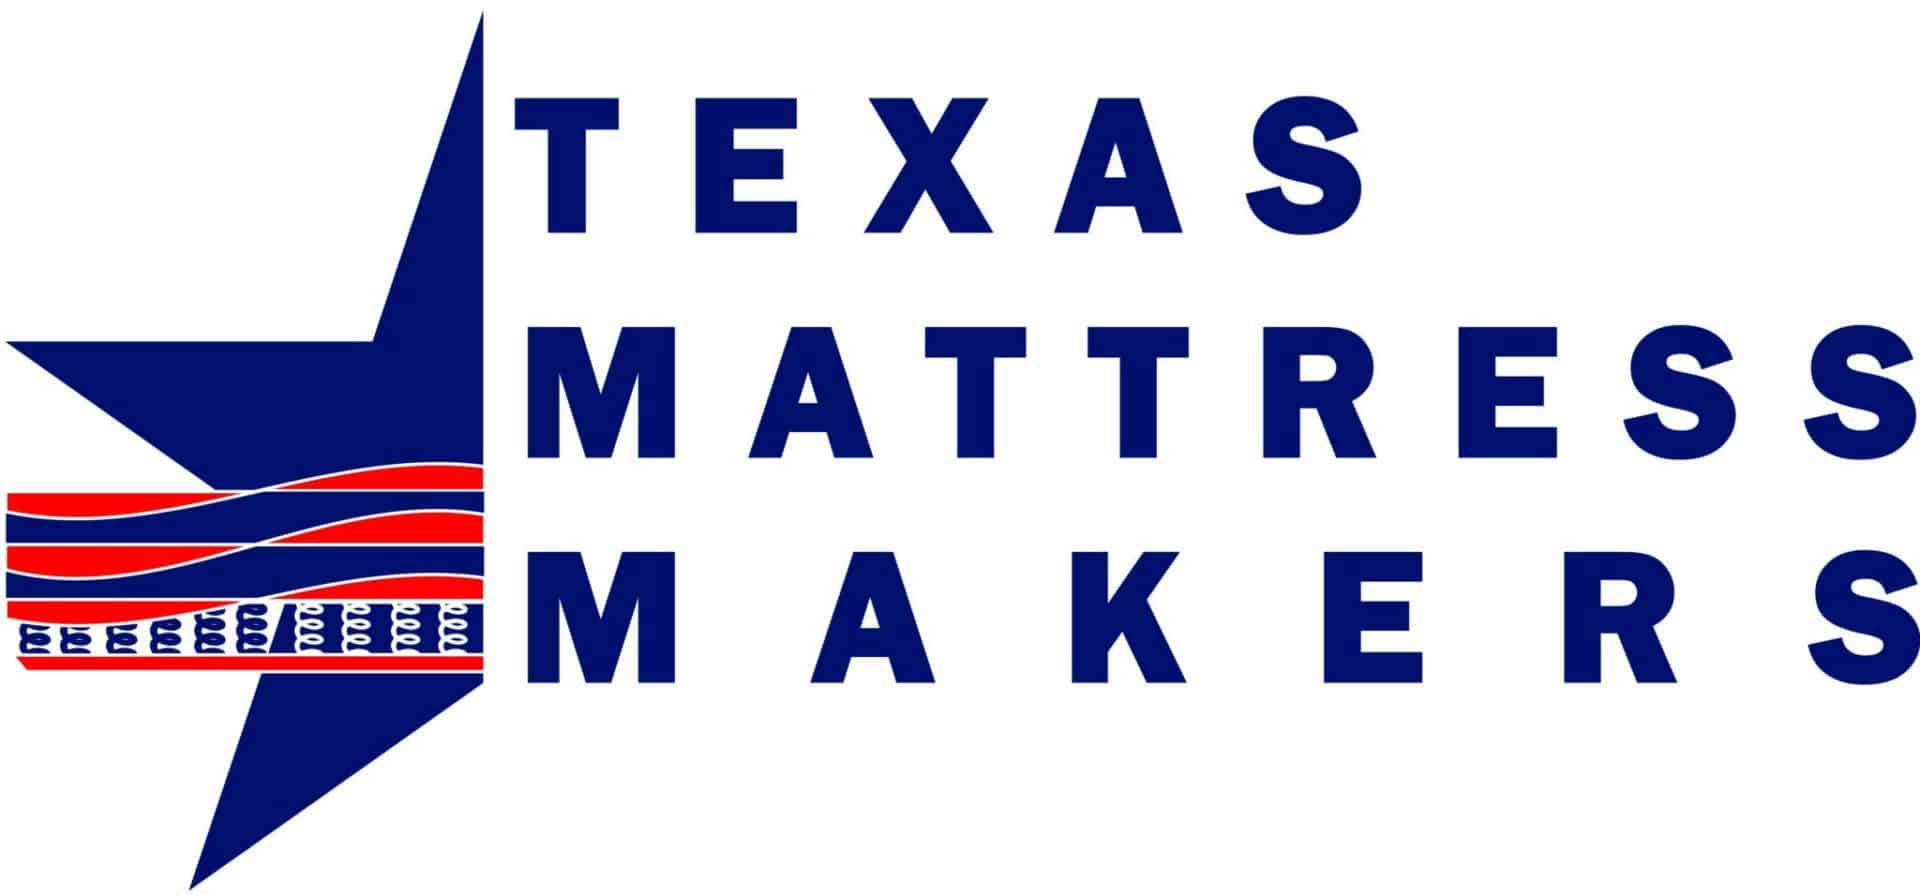 Texas Mattress Makers